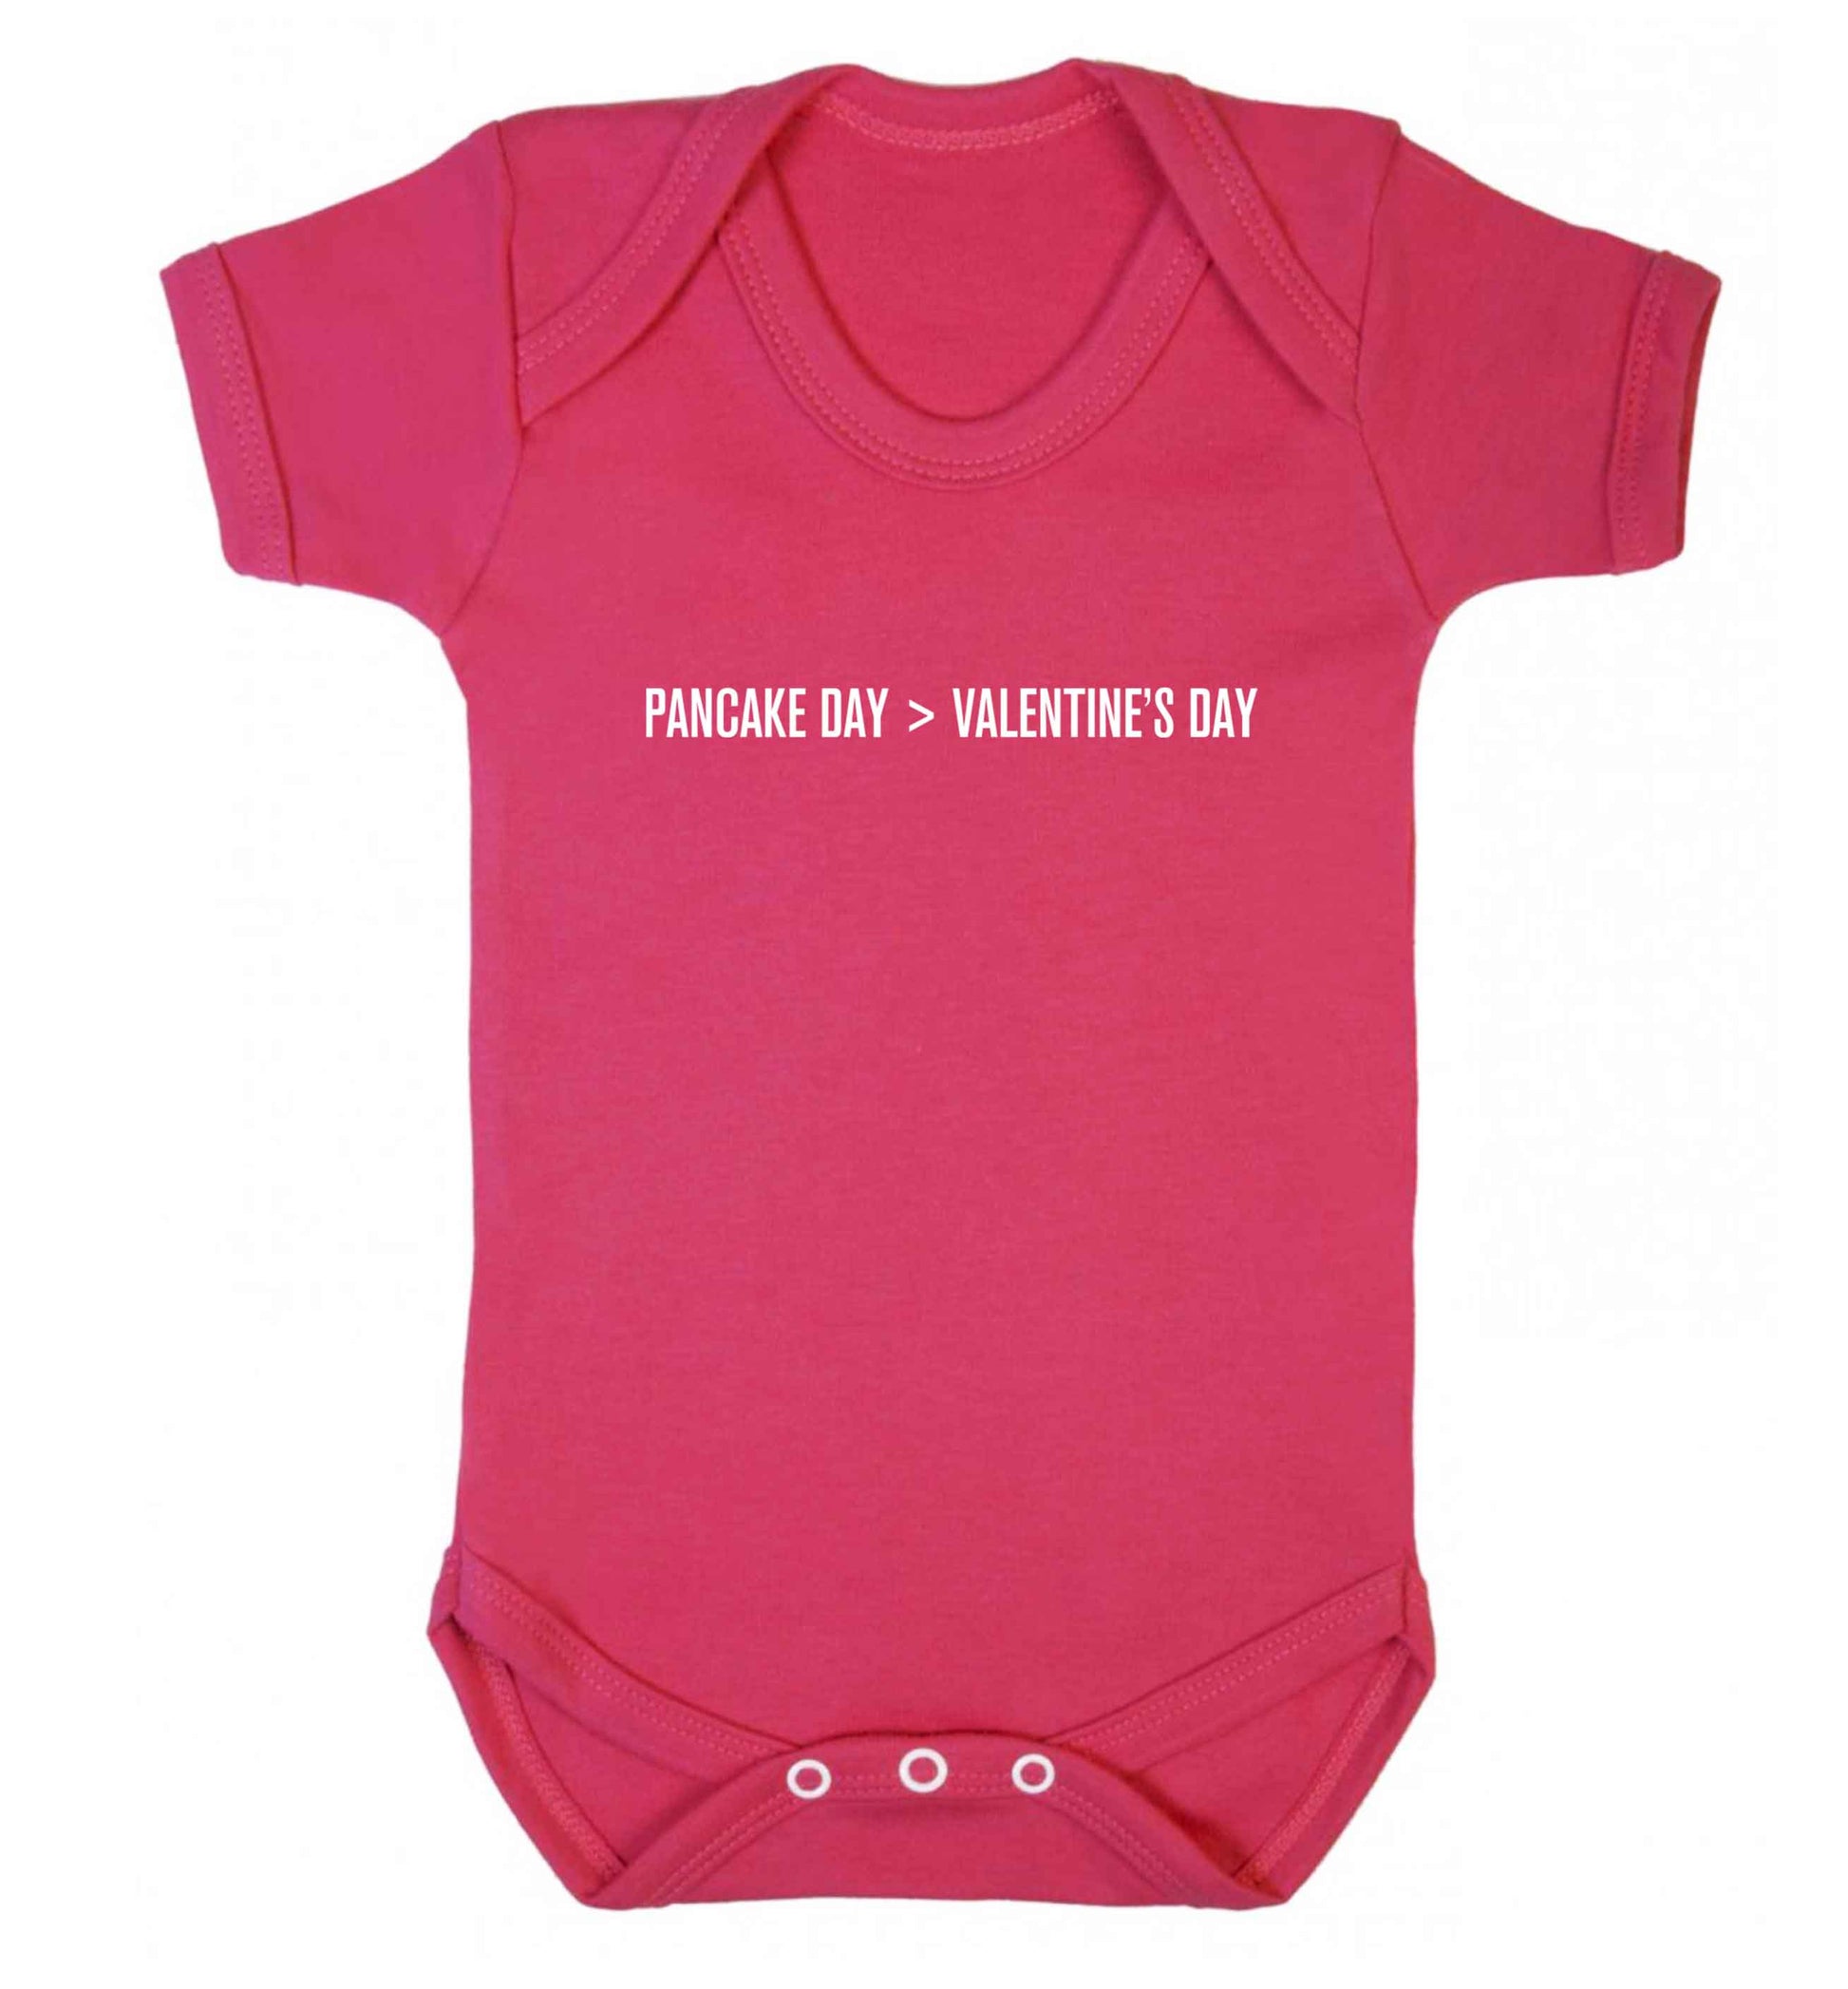 Pancake day > valentines day baby vest dark pink 18-24 months